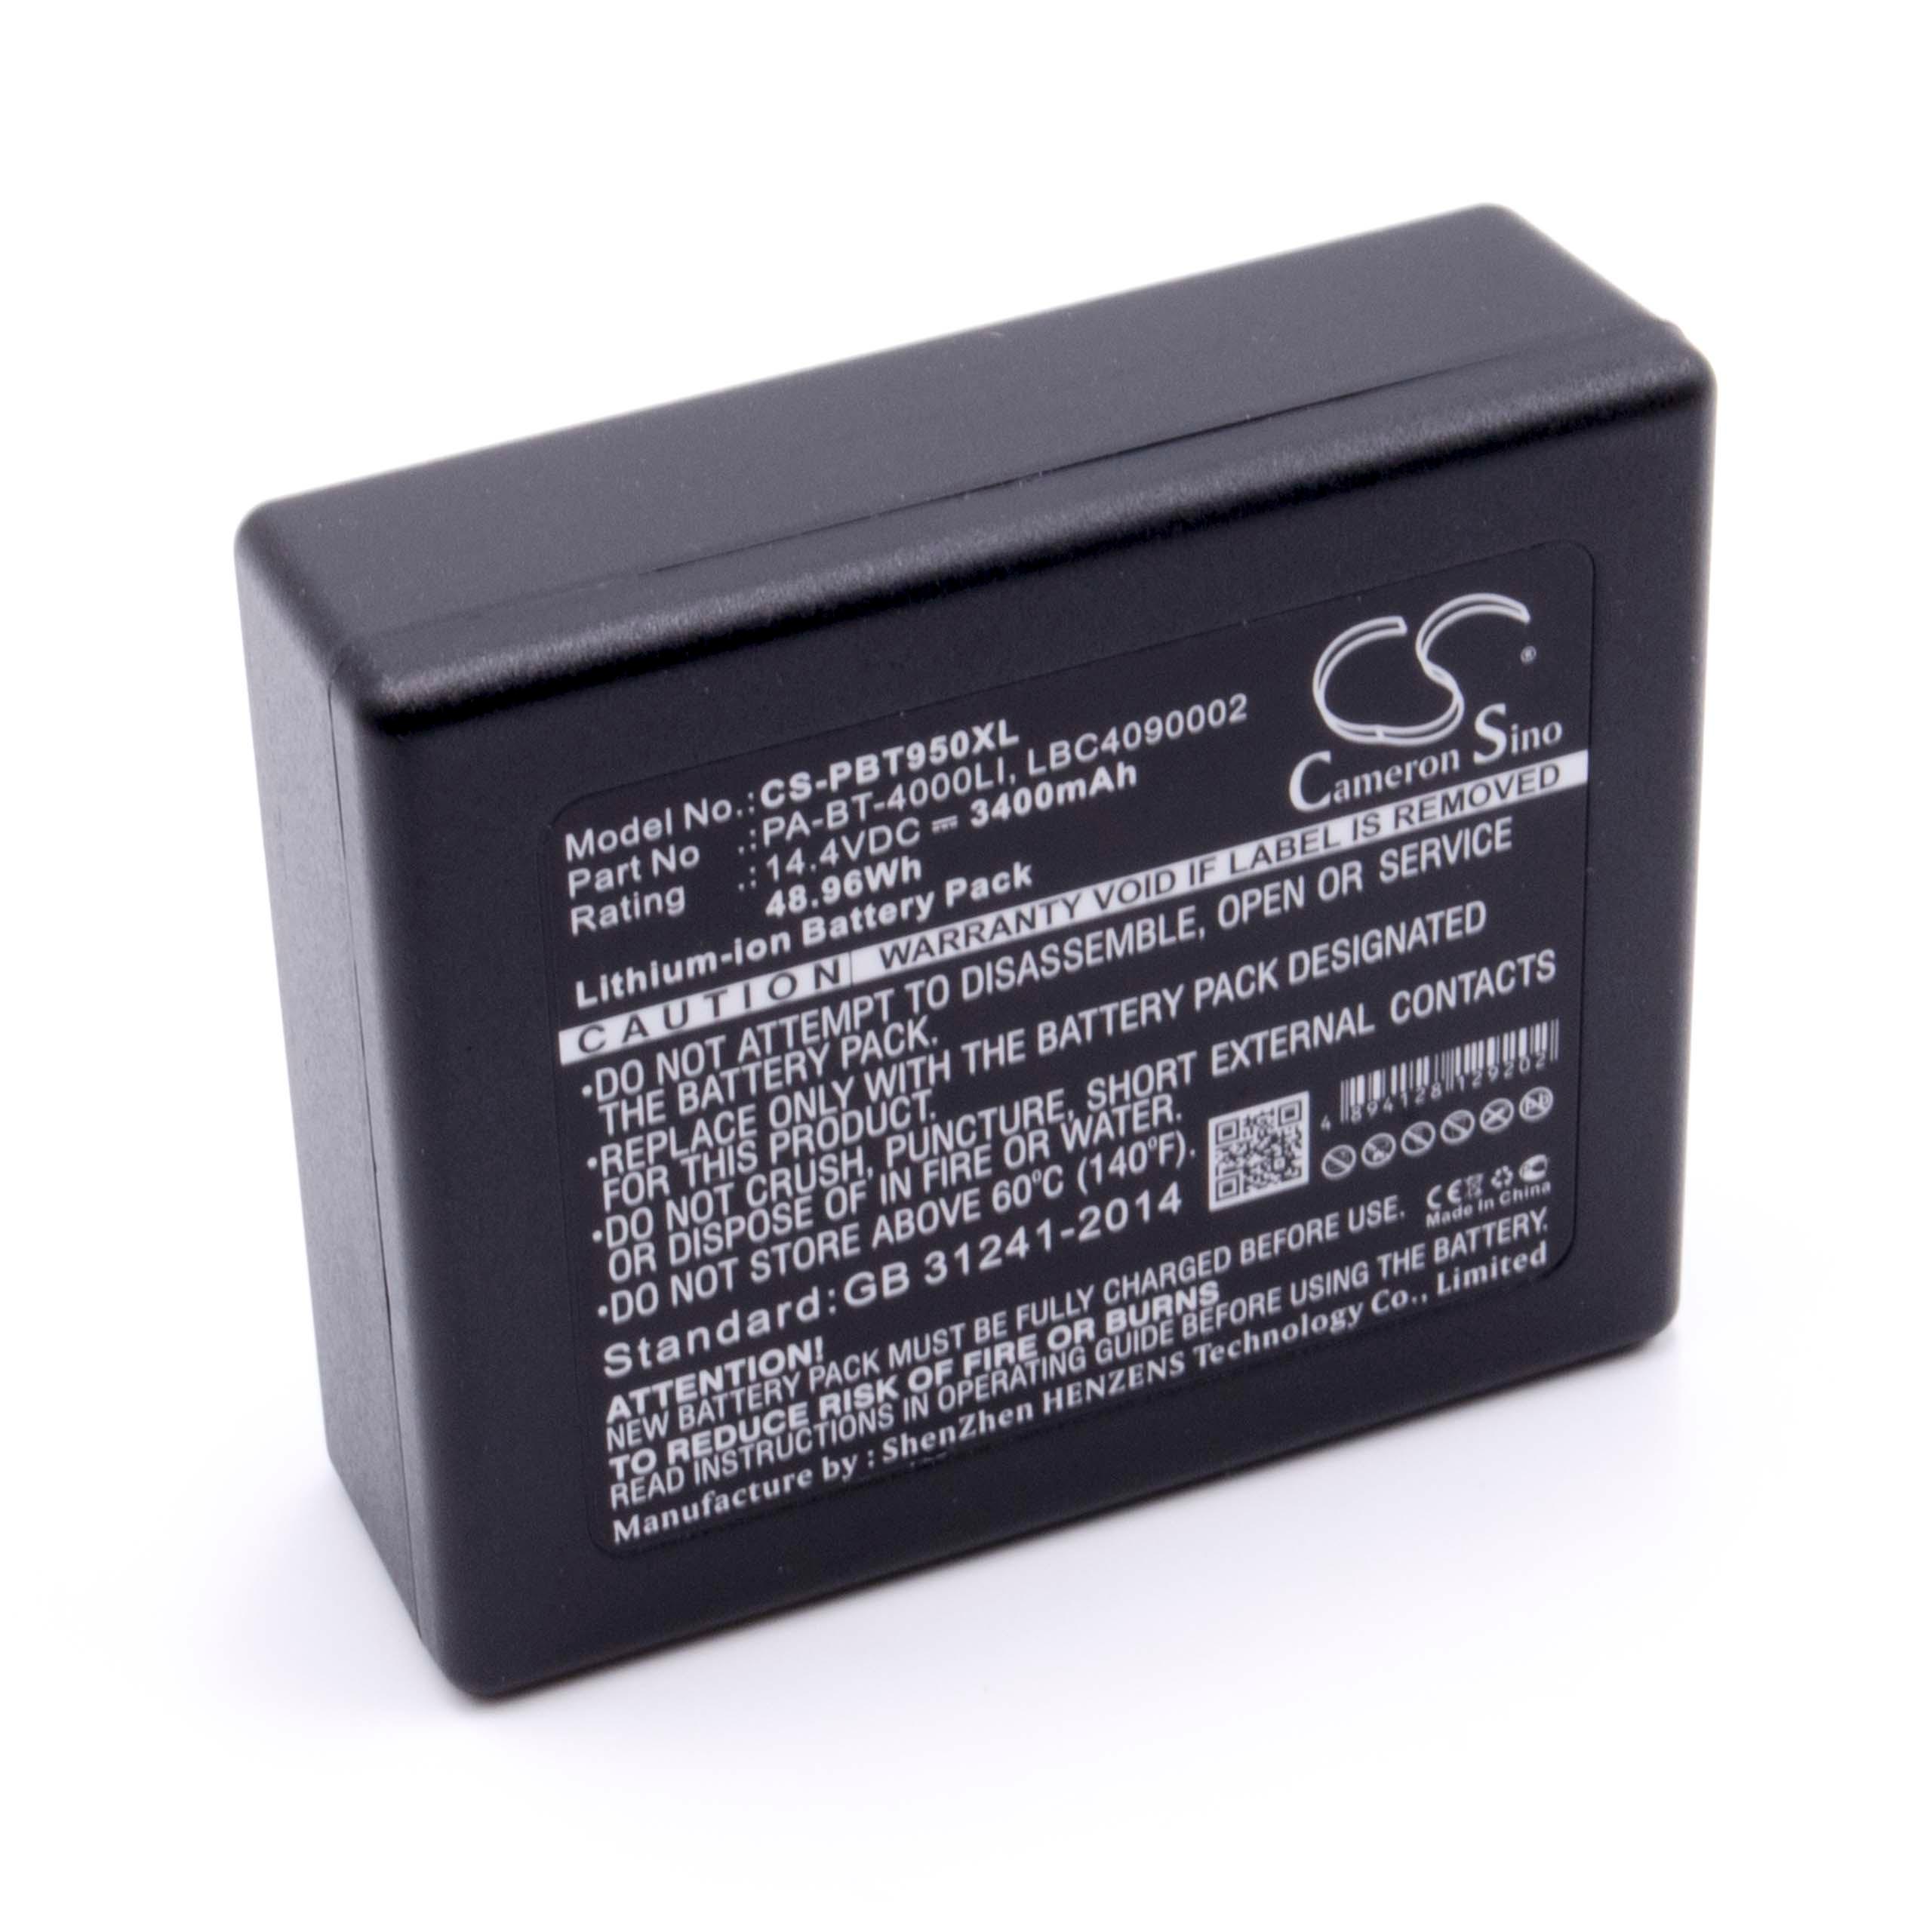 Akumulator do drukarki / drukarki etykiet zamiennik Brother HP25B, LBC4090002 - 3400 mAh 14,4 V Li-Ion